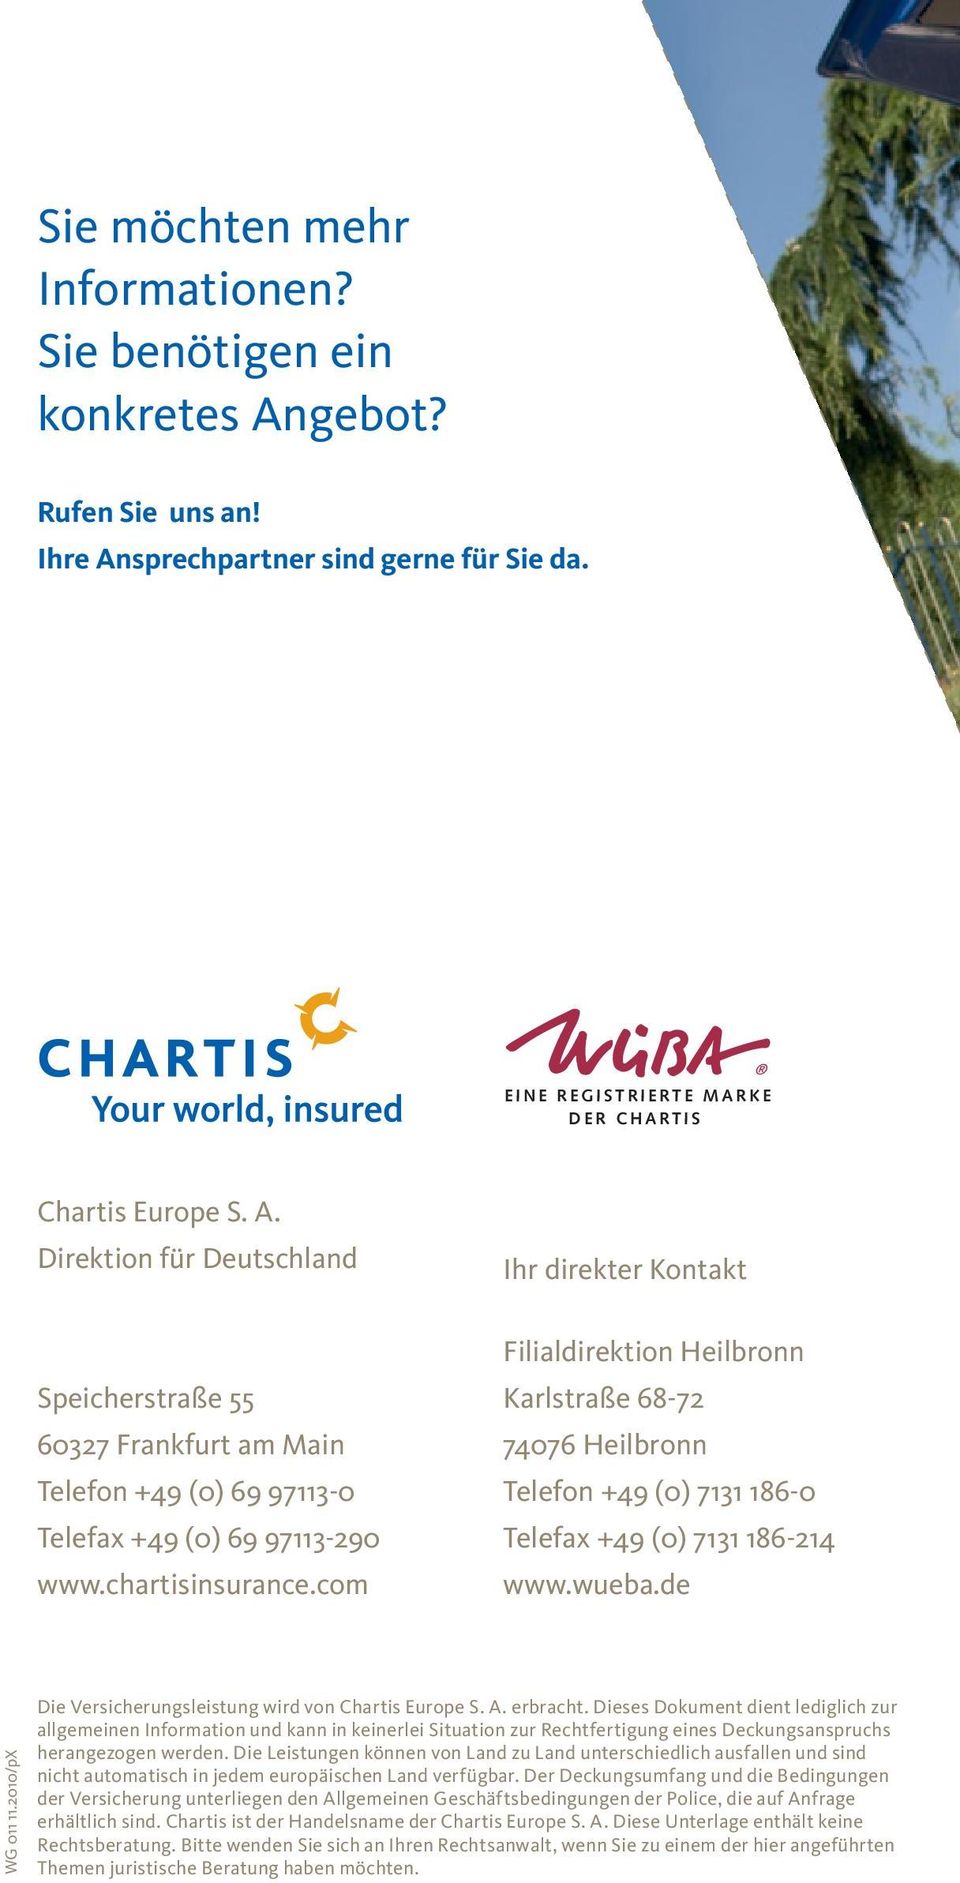 2010/pX Die Versicherungsleistung wird von Chartis Europe S. A. erbracht.